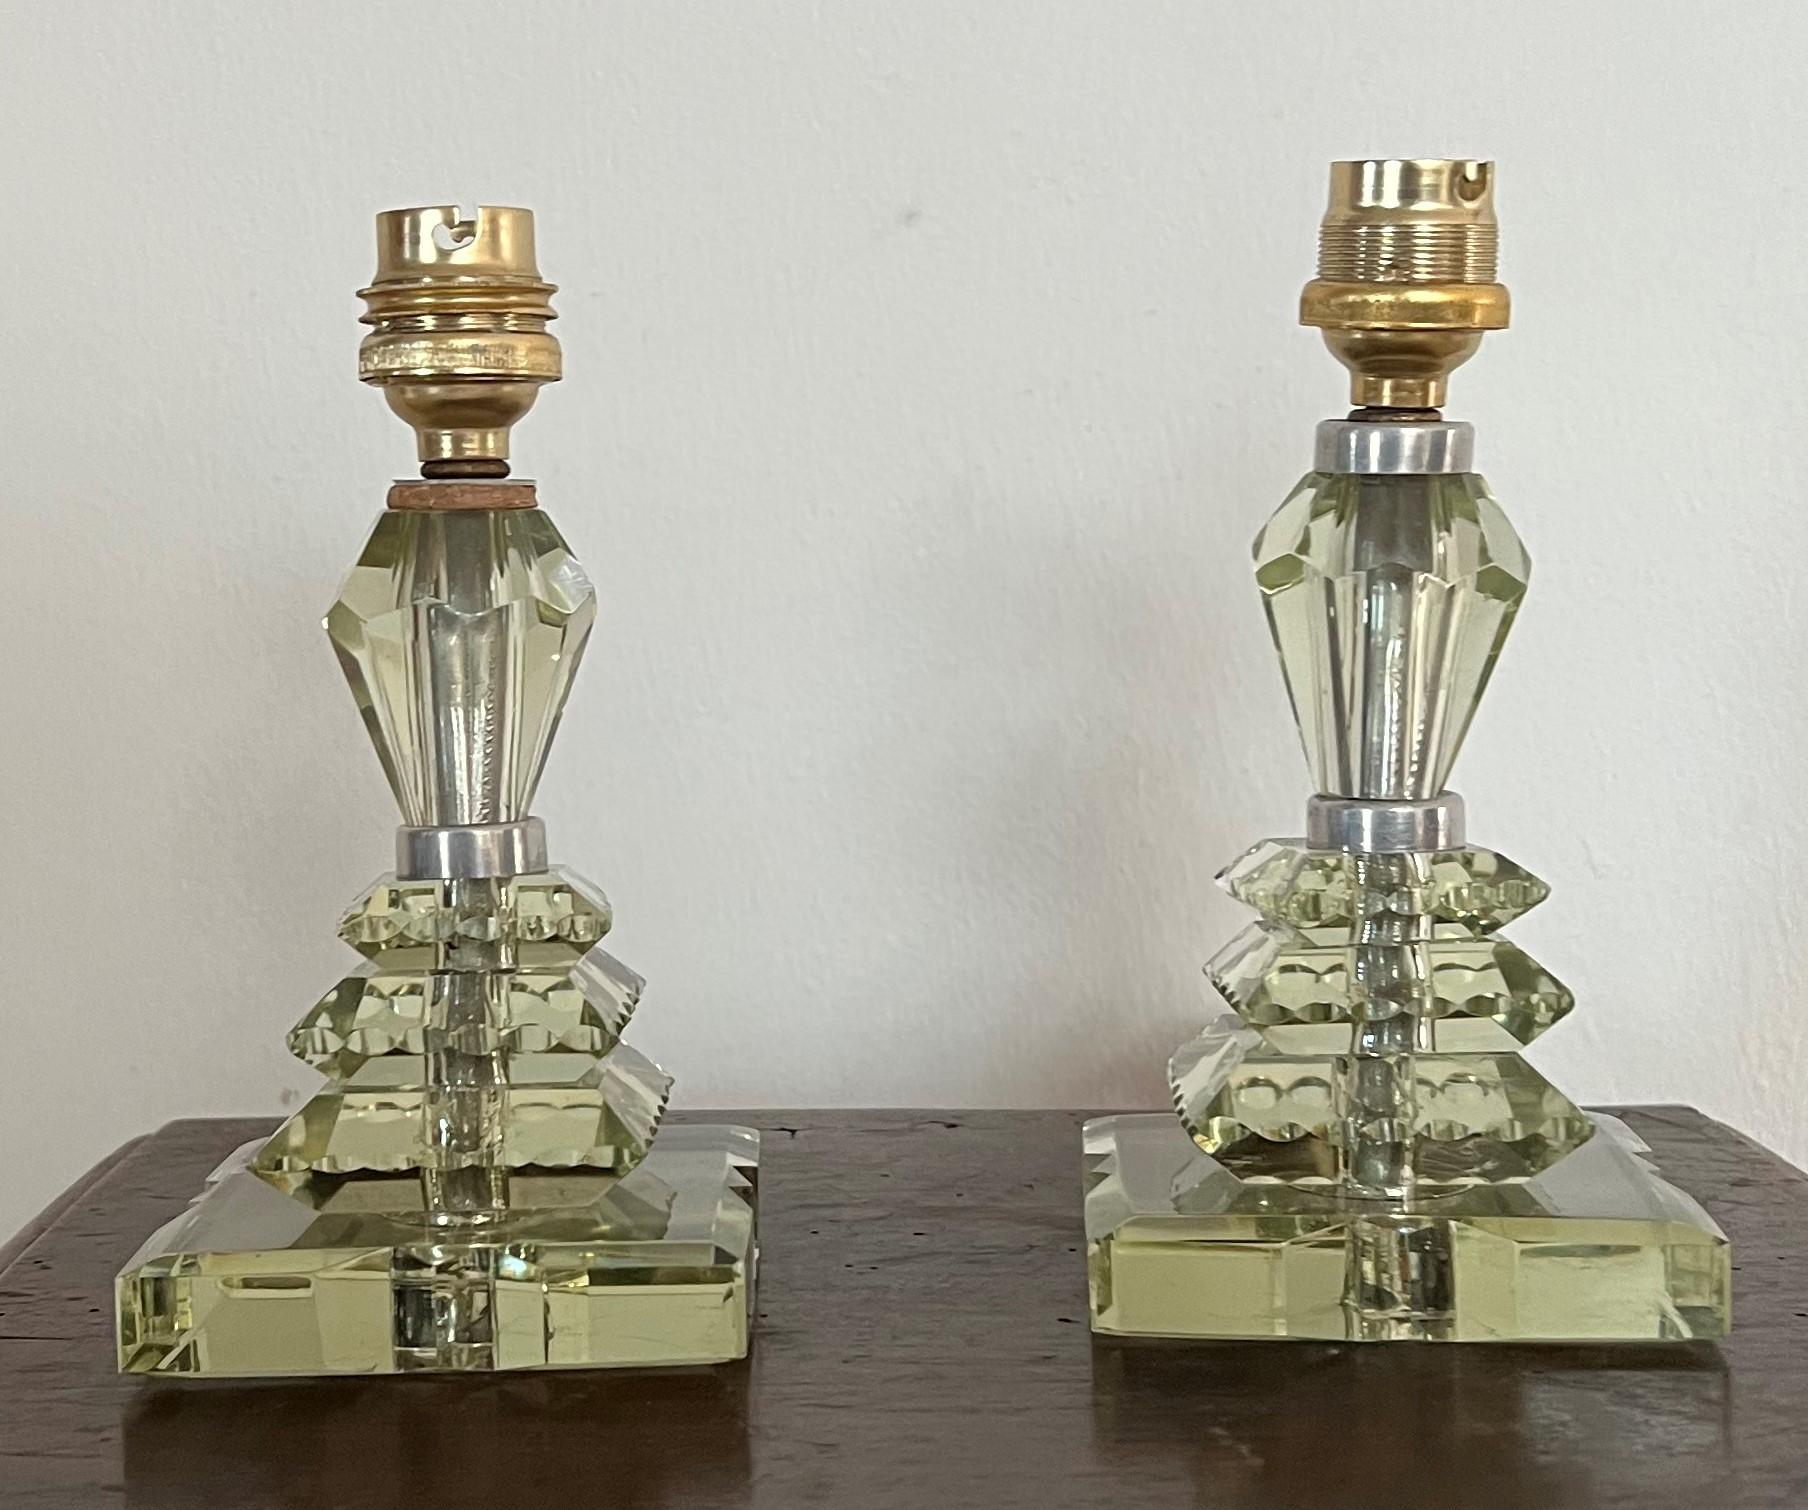 Belle paire de lampes de table dans le style de Baccarat et Jacques Adnet mais elles ne sont pas marquées.
Fabriqué en verre de plomb légèrement vert, taillé à la main.
France vers 1940.
Les pièces 